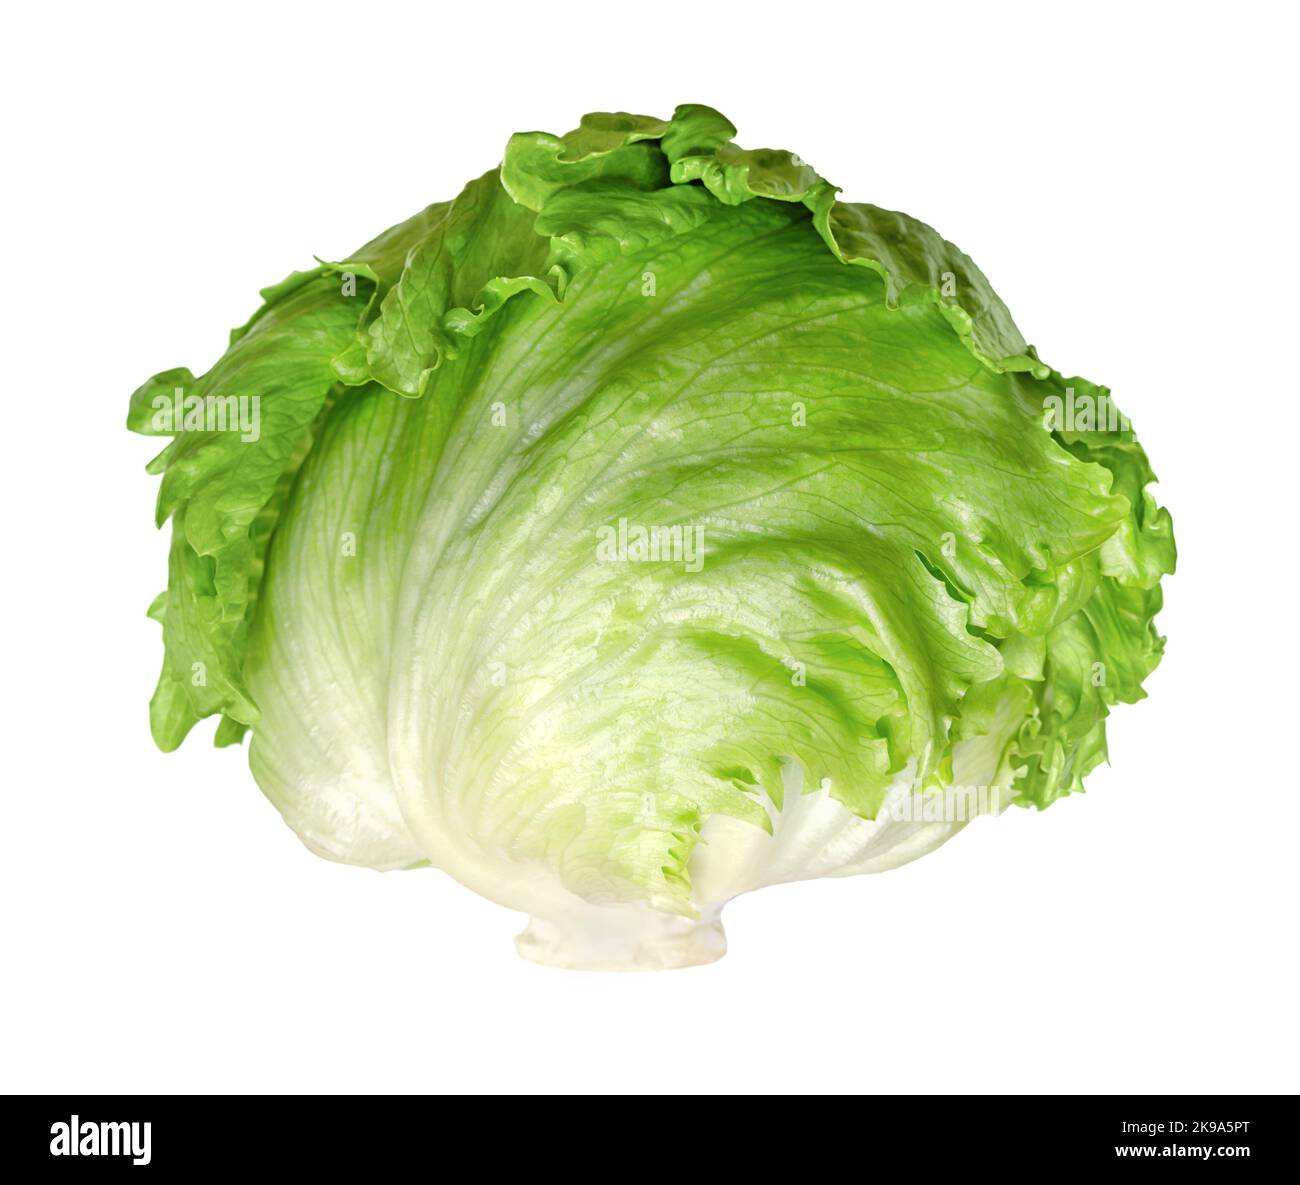 Lattuga iceberg, o croccante, isolata, vista frontale, su sfondo bianco. Testa di insalata verde chiaro, fresca, talvolta chiamata anche lattuga di cavolo. Foto Stock